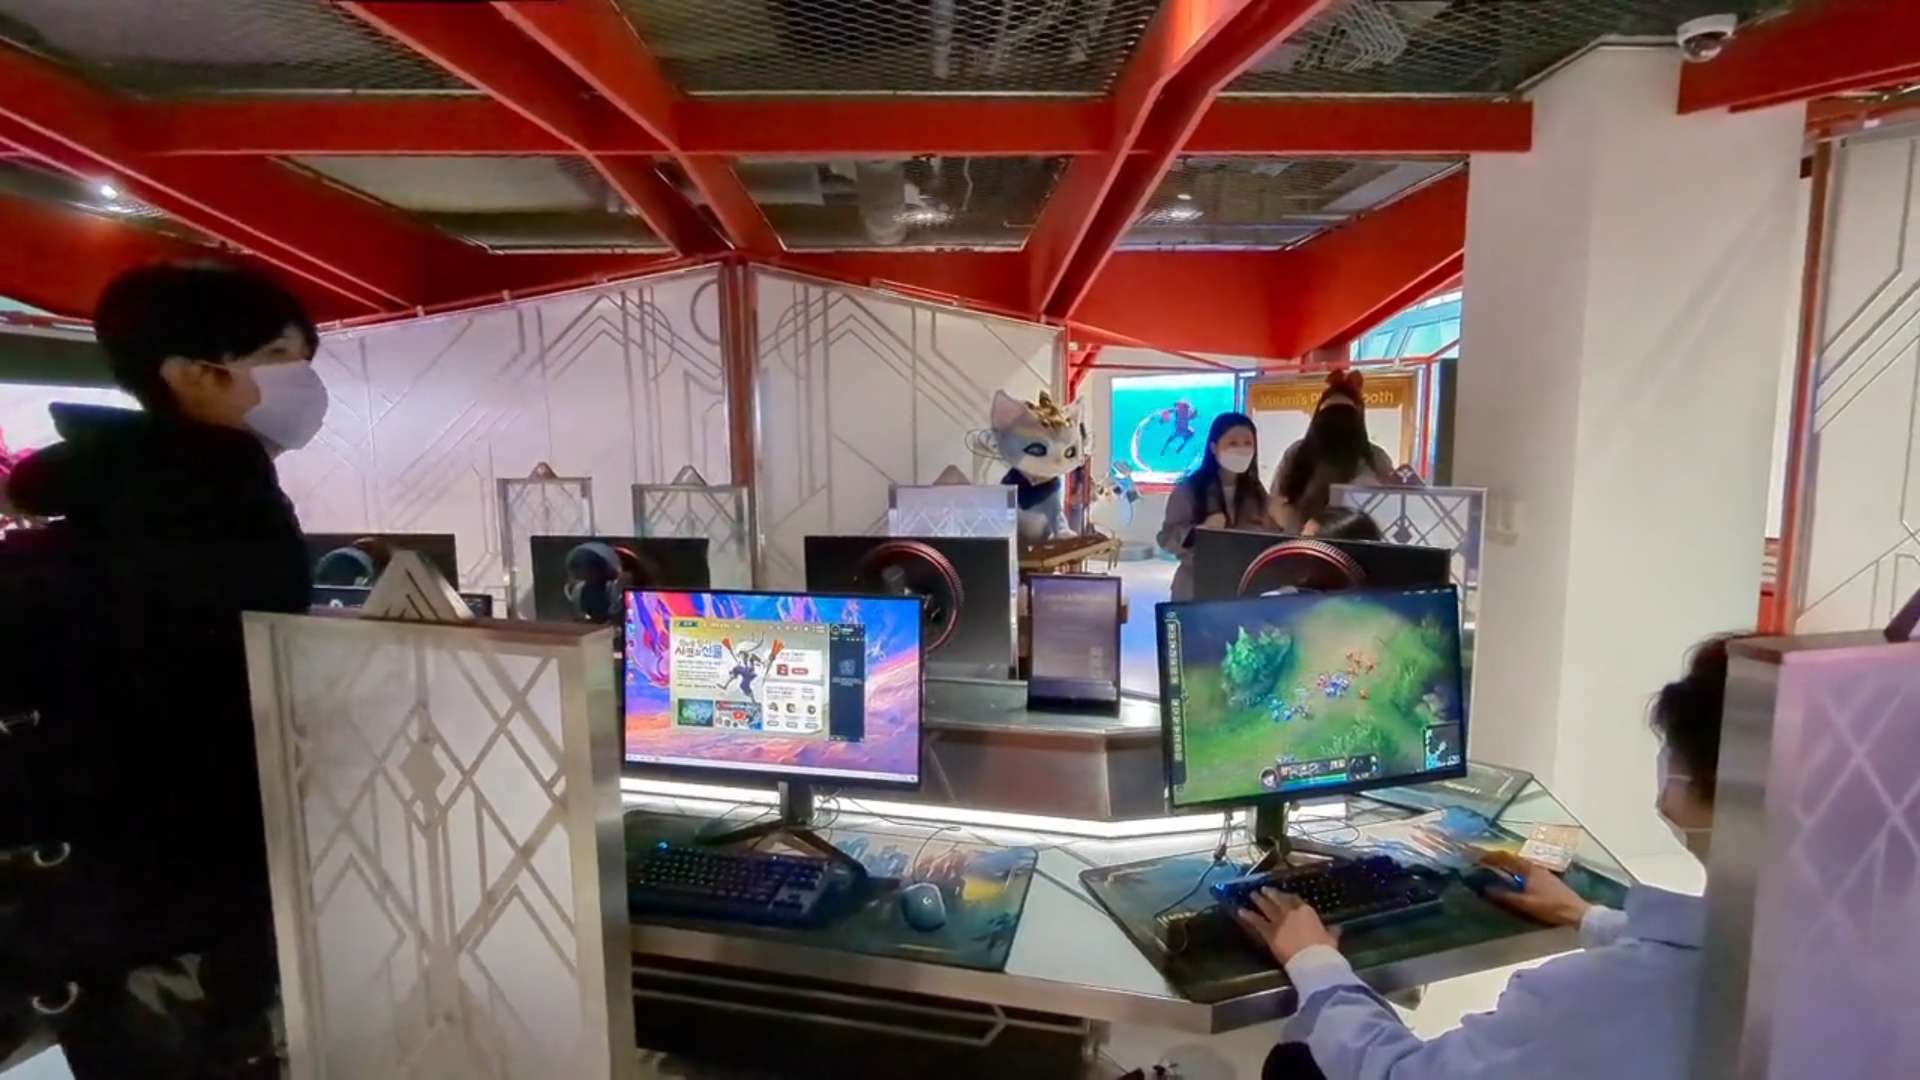 Khu vực chơi game được thiết kế khá giống các "PC Bang" tại Hàn Quốc.